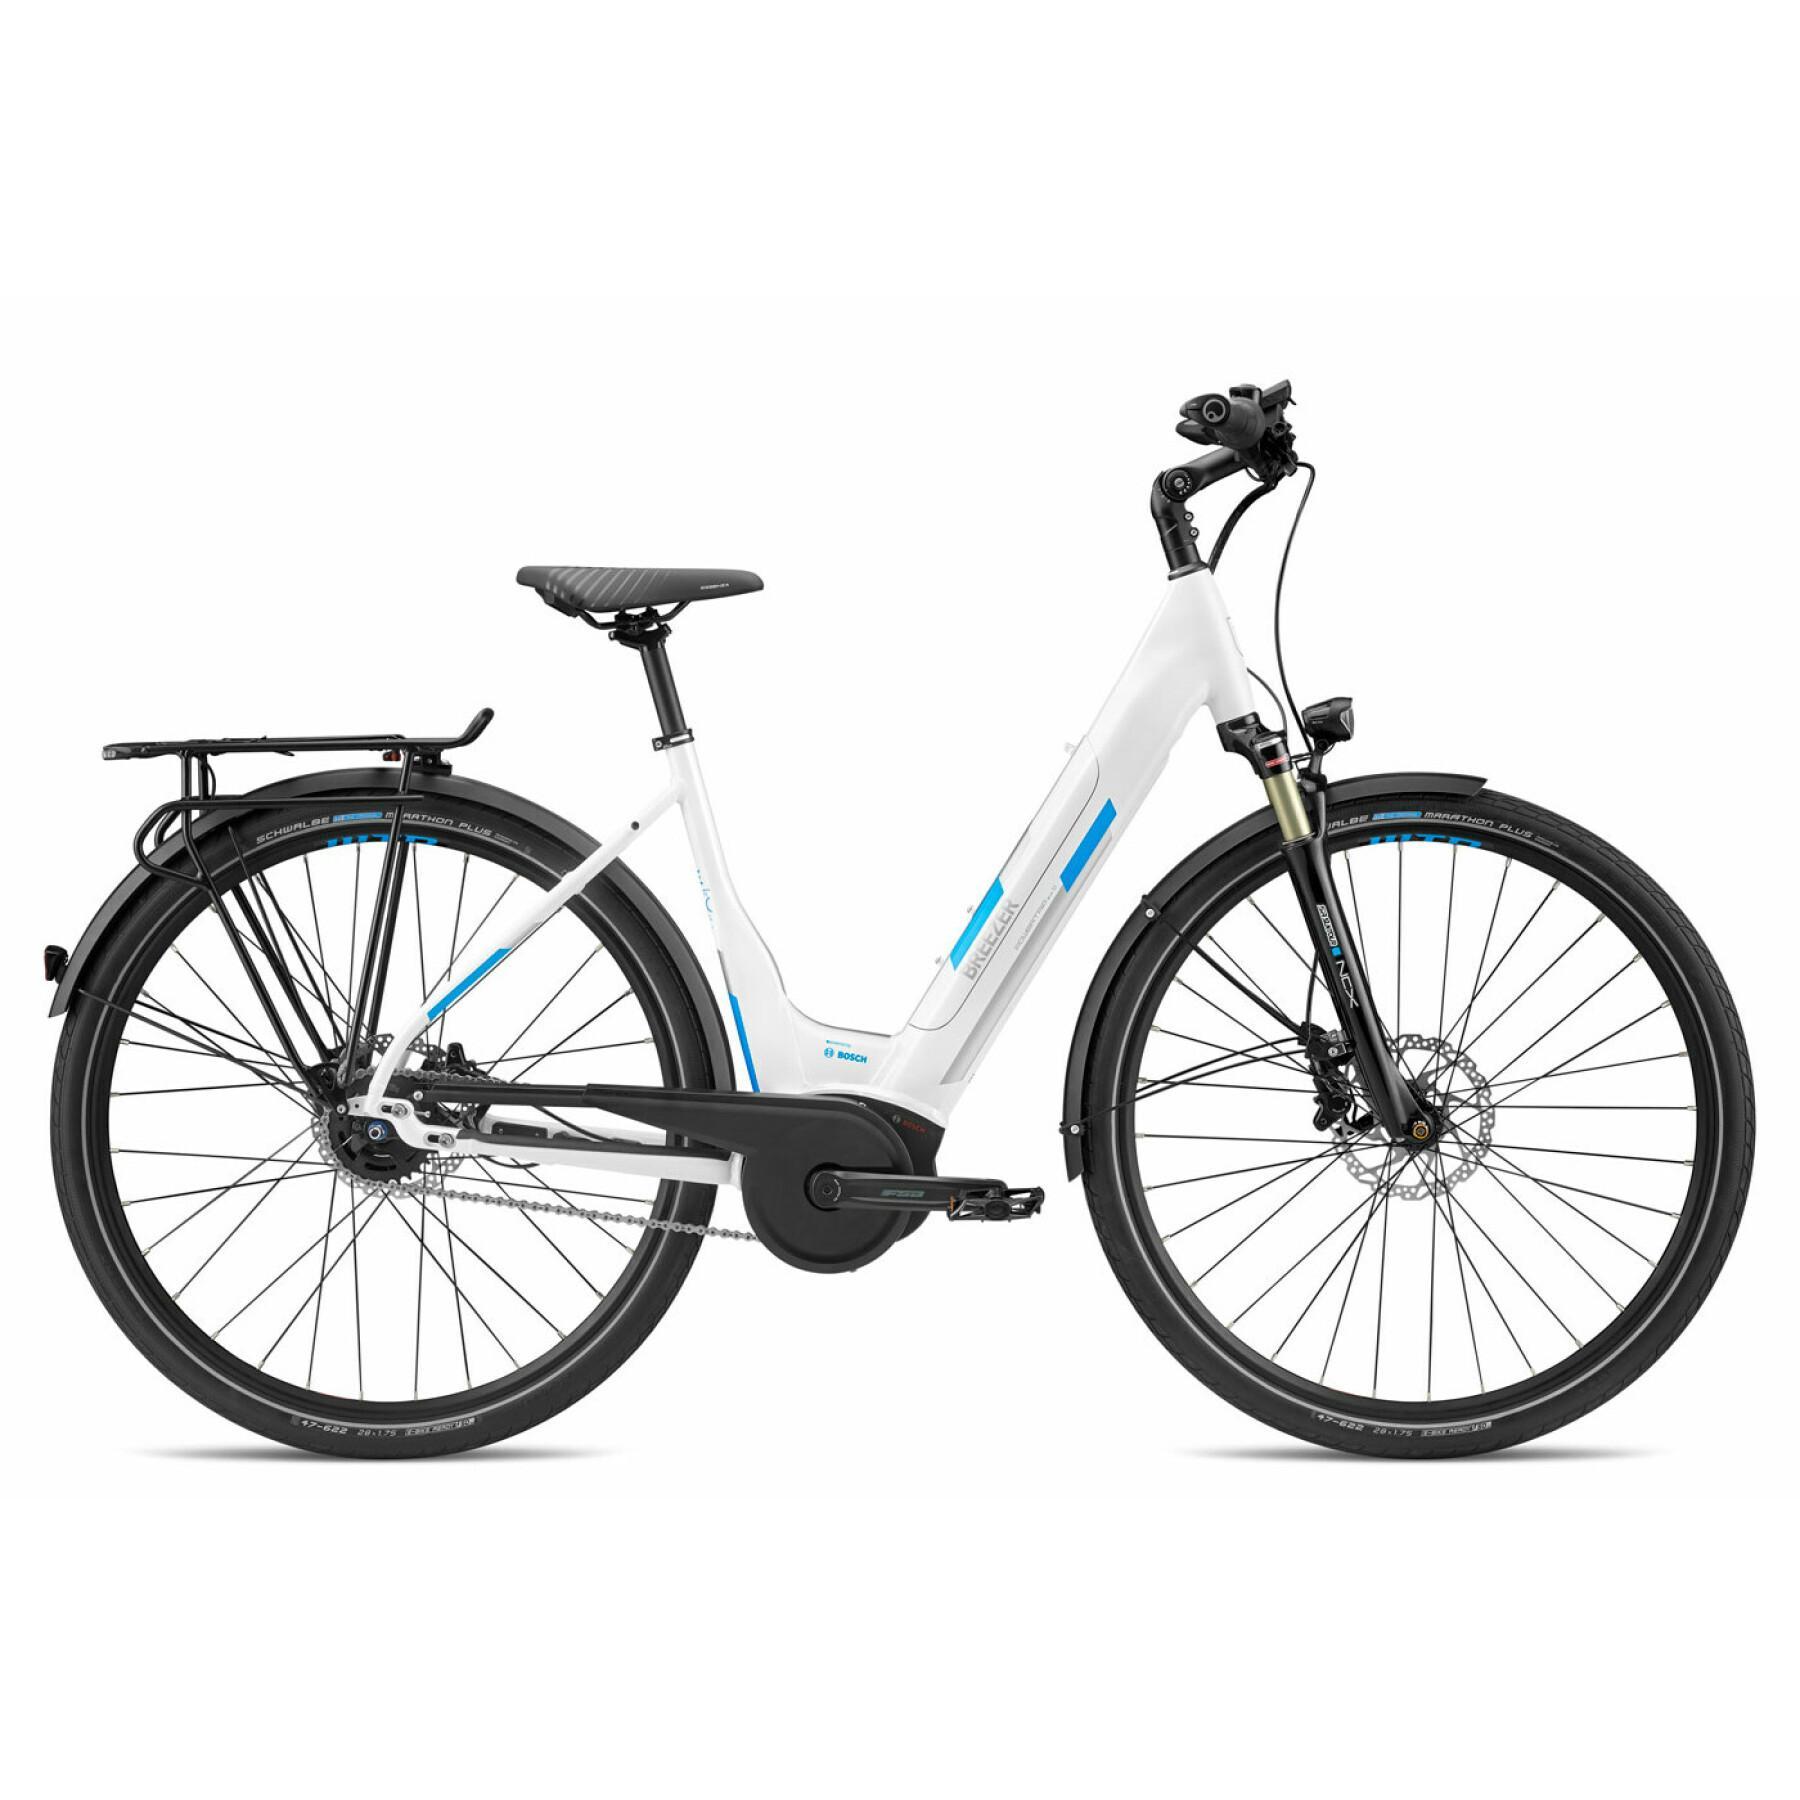 Elektrisk cykel för kvinnor Breezer Powertrip evo IG 1.1+ LS 2020